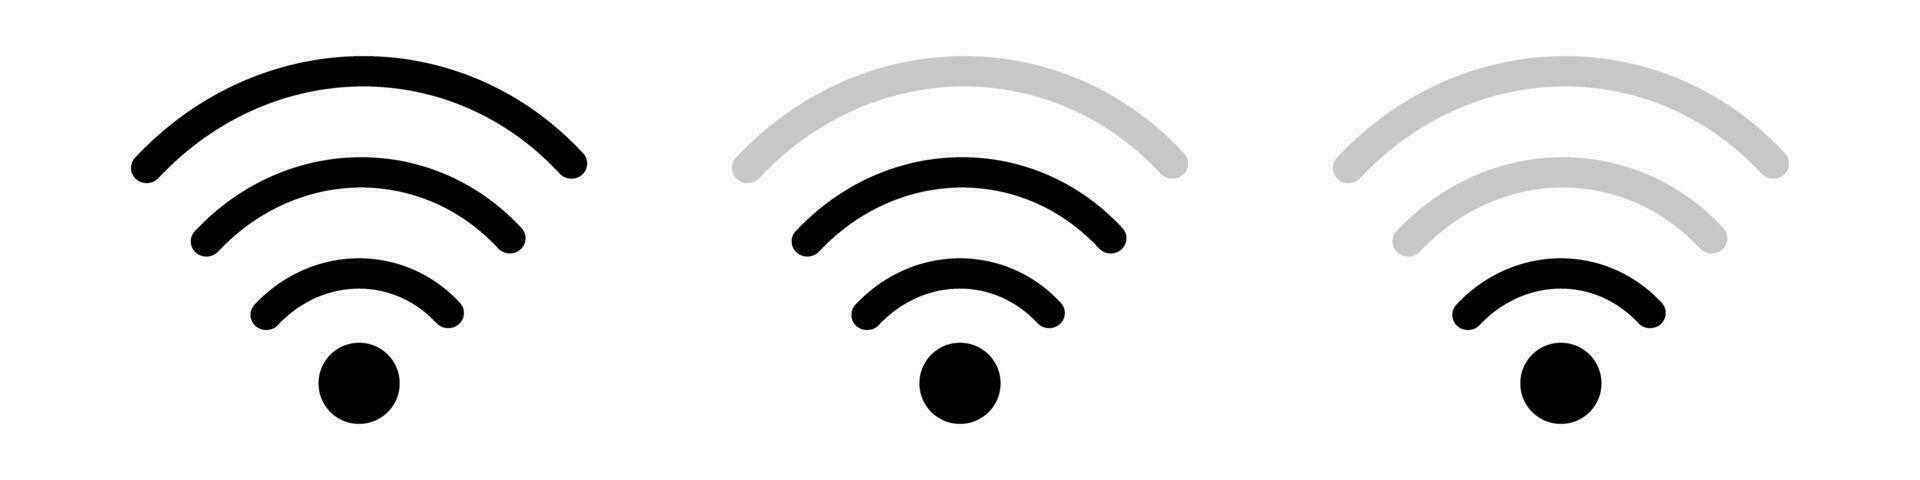 nätverk ikoner med annorlunda stilar för varje signal styrka nivå. Wi-Fi styrka nivå och en nätverk ikon för varje nivå av signal styrka. vektor. vektor